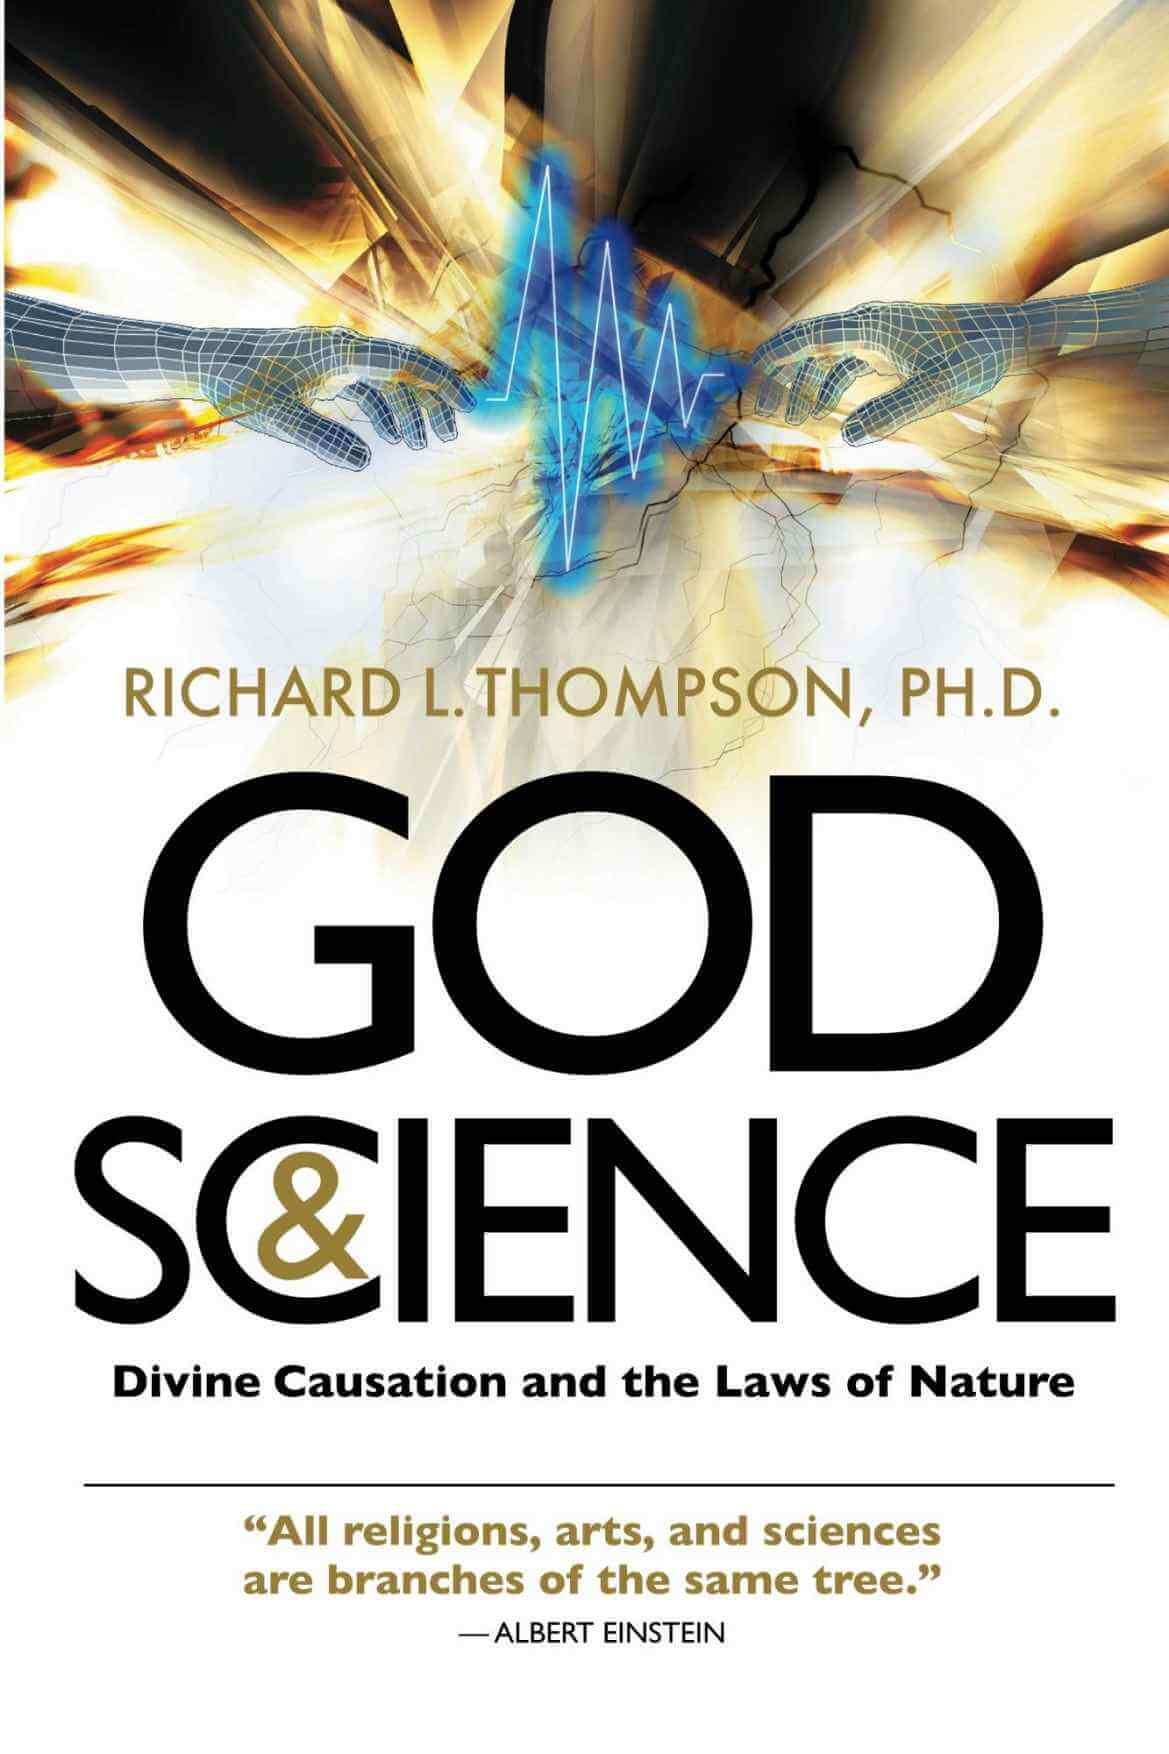 Бог и наука - Божественная причина и законы природы